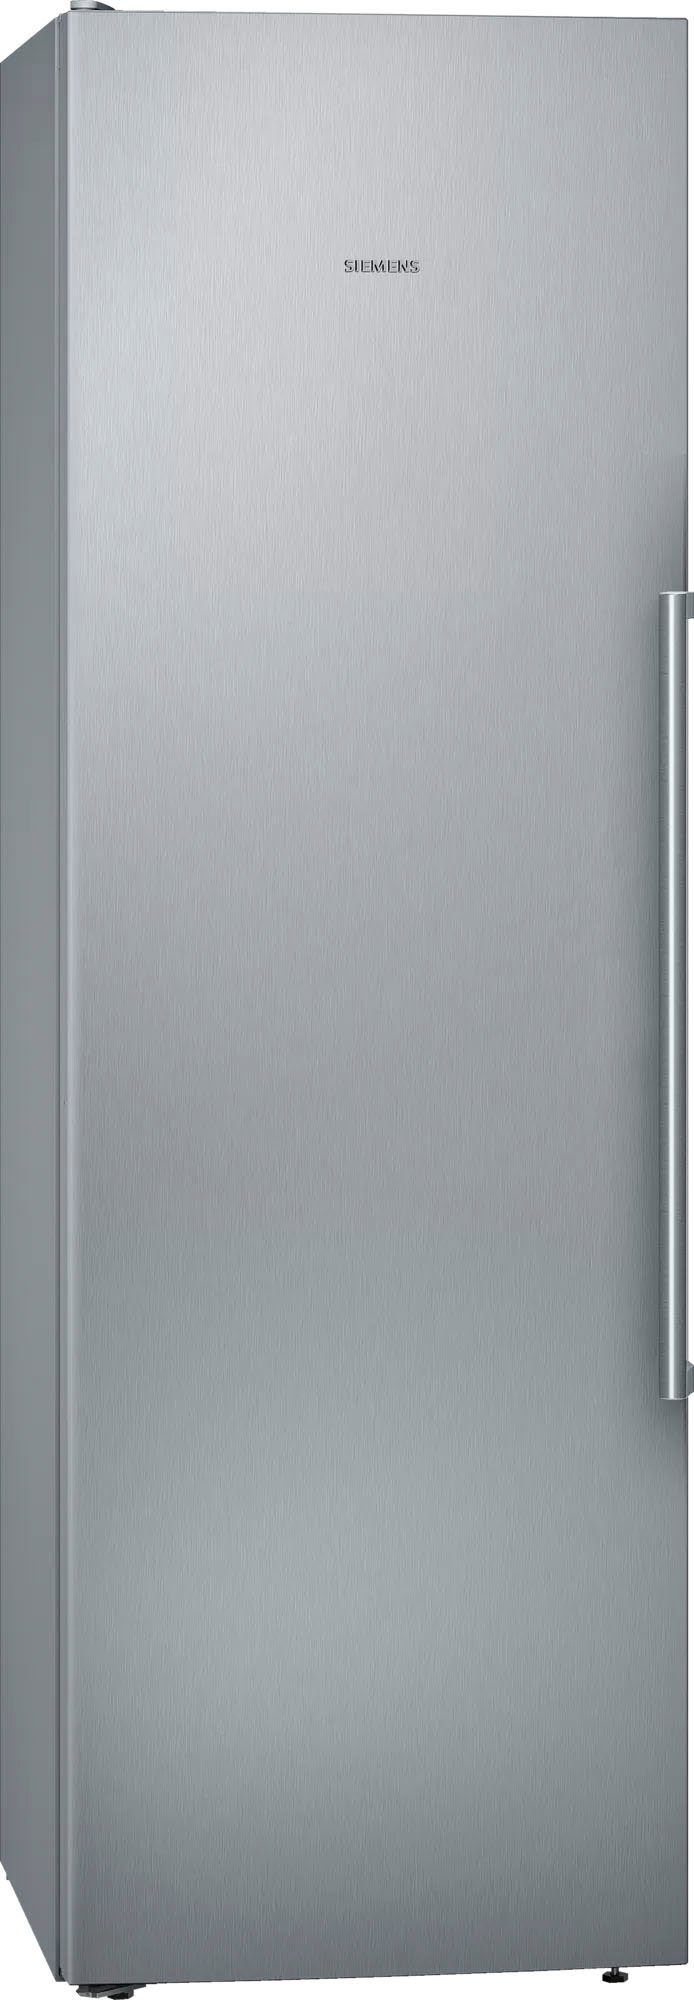 SIEMENS Kühlschrank iQ700 KS36FPIDP, 186 cm hoch, 60 cm breit